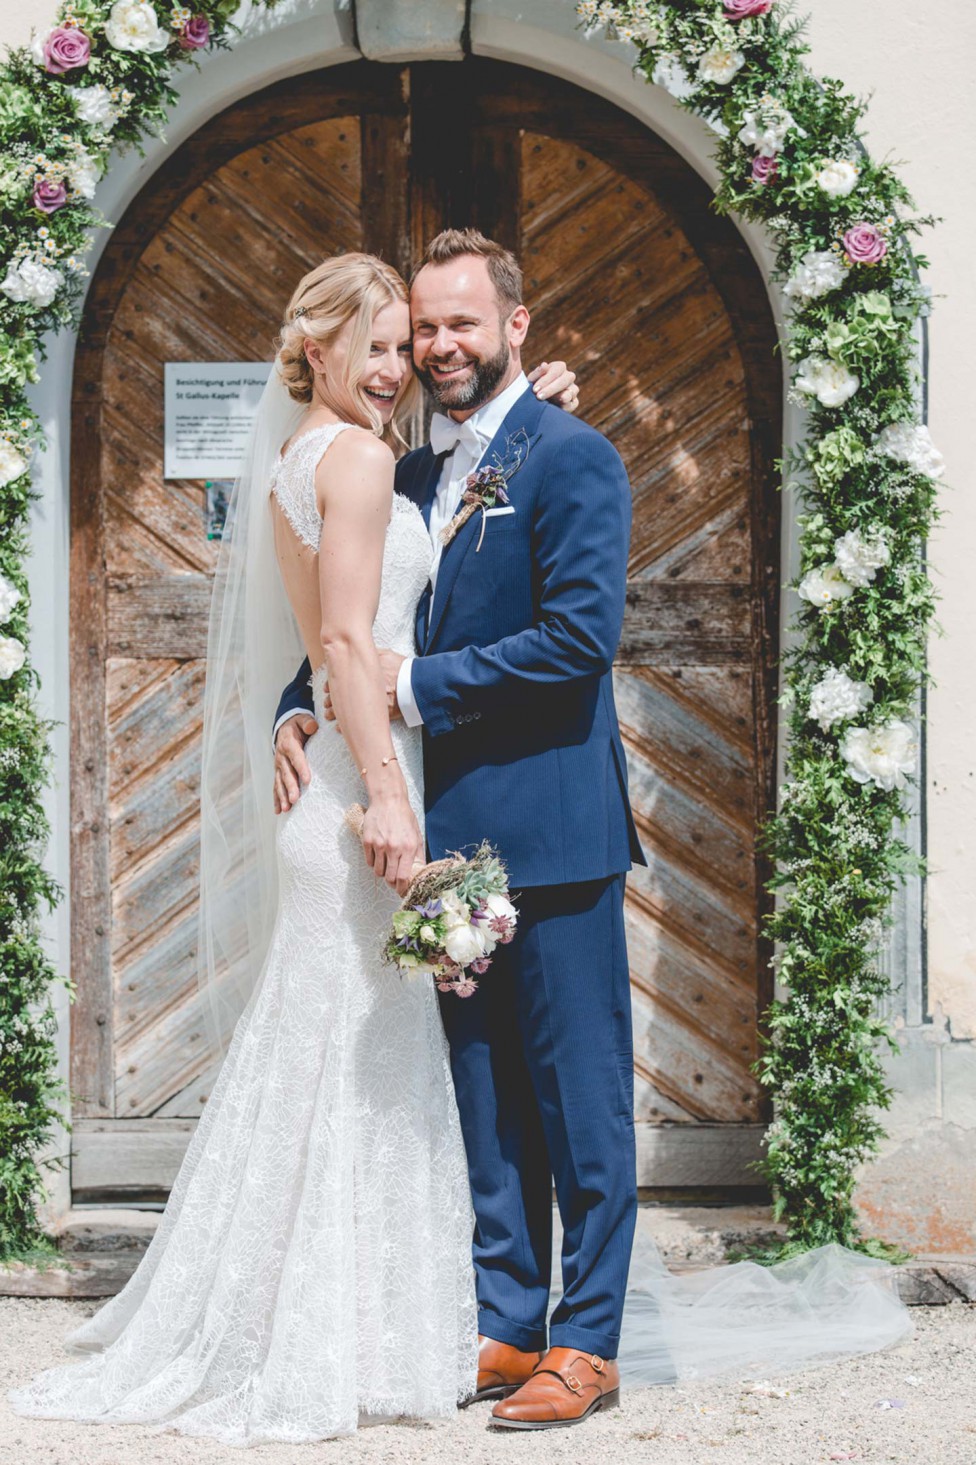 Hochzeitswahn - Eine Braut und ein Bräutigam lächeln freudig vor einer kunstvoll verzierten Holztür, die mit Blumendekorationen geschmückt ist. Die Braut trägt ein langes weißes Spitzenkleid und einen Schleier und hält einen Blumenstrauß, während der Bräutigam einen blauen Anzug mit einer Ansteckblume trägt.